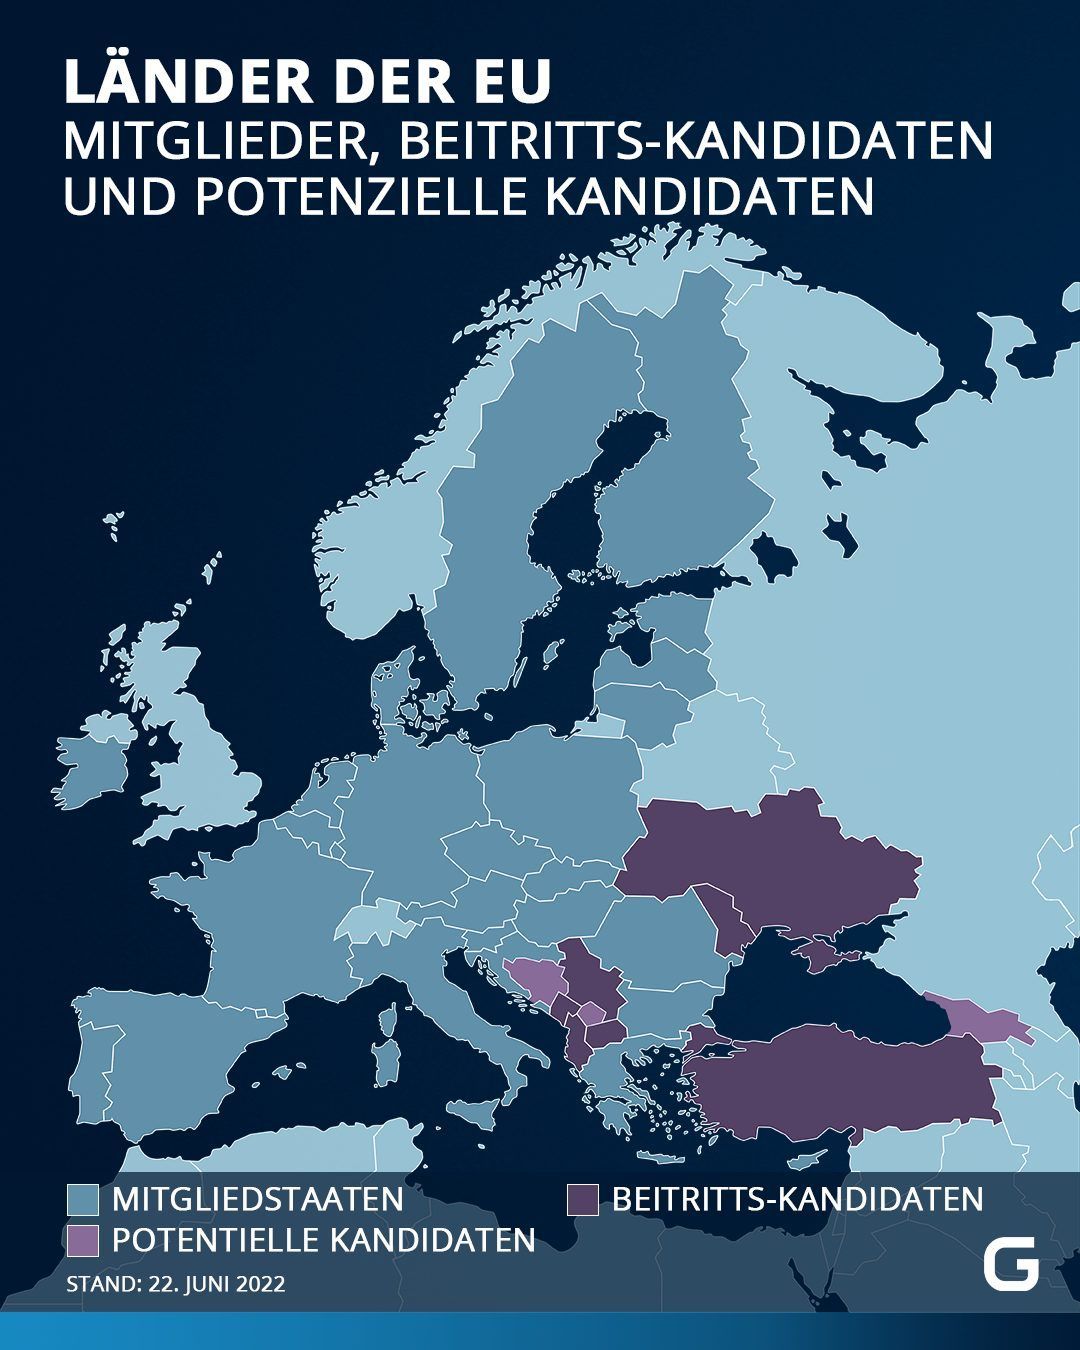 In der Karte siehst du alle Mitgliedstaaten sowie Beitritts- und potentielle Kandidaten.